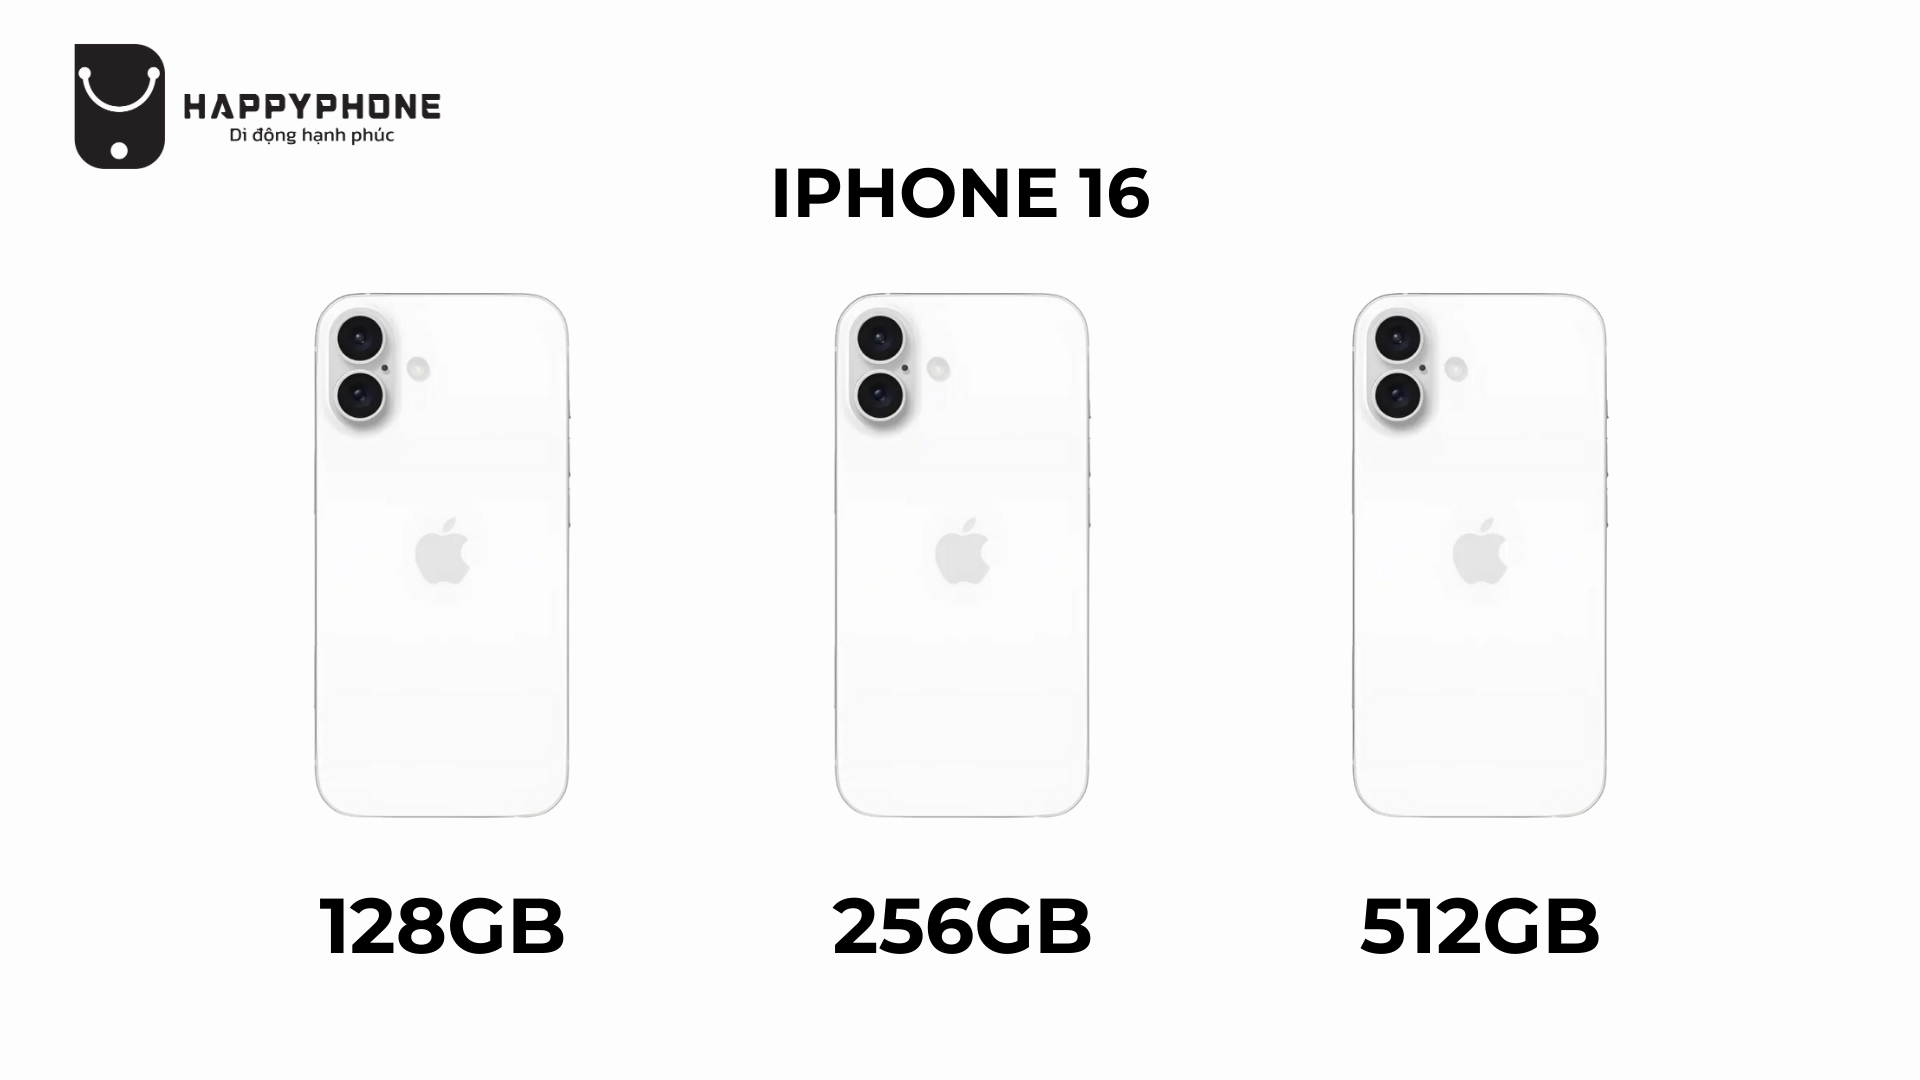 iPhone 16 Thường và iPhone 16 Plus sẽ giữ nguyên các phiên bản ROM